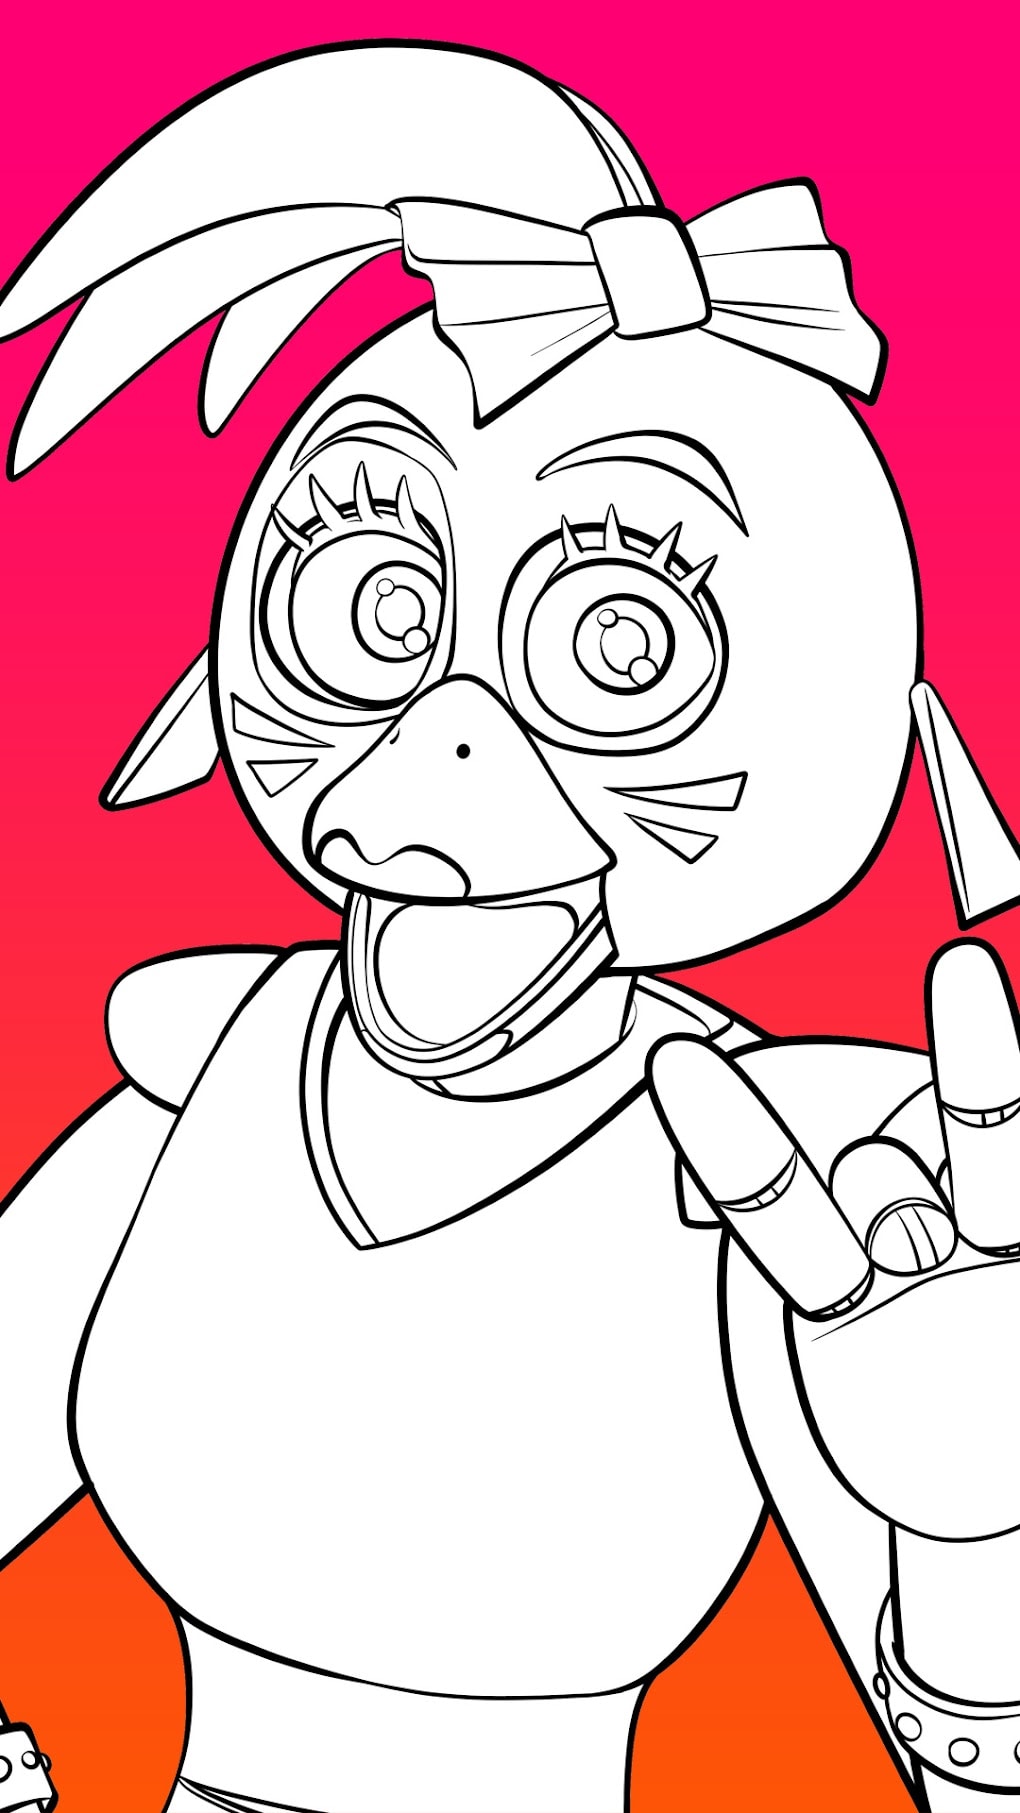 Download do APK de Iniciante anime desenho idéias para Android